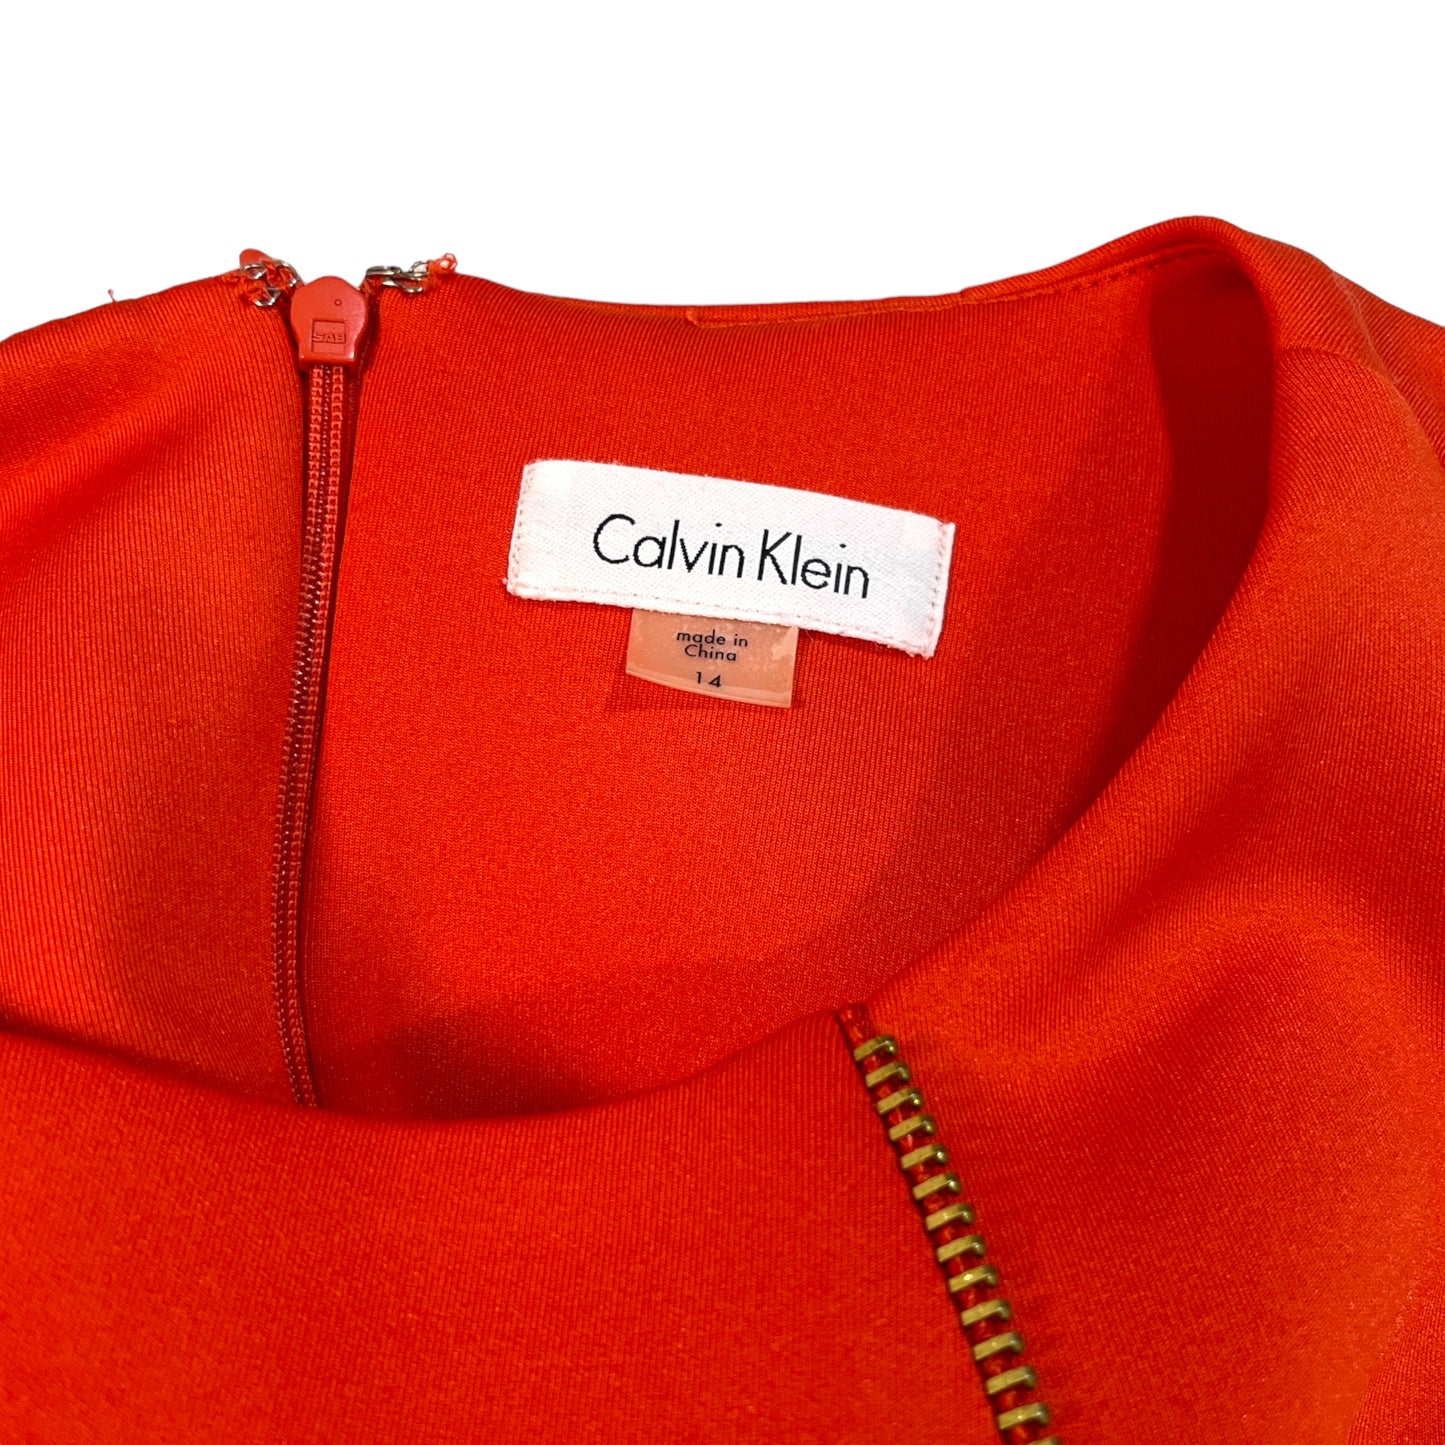 Vestido Sheath Calvin Klein  con Cierre Dorado al Frente - Estilo Moderno y Elegante